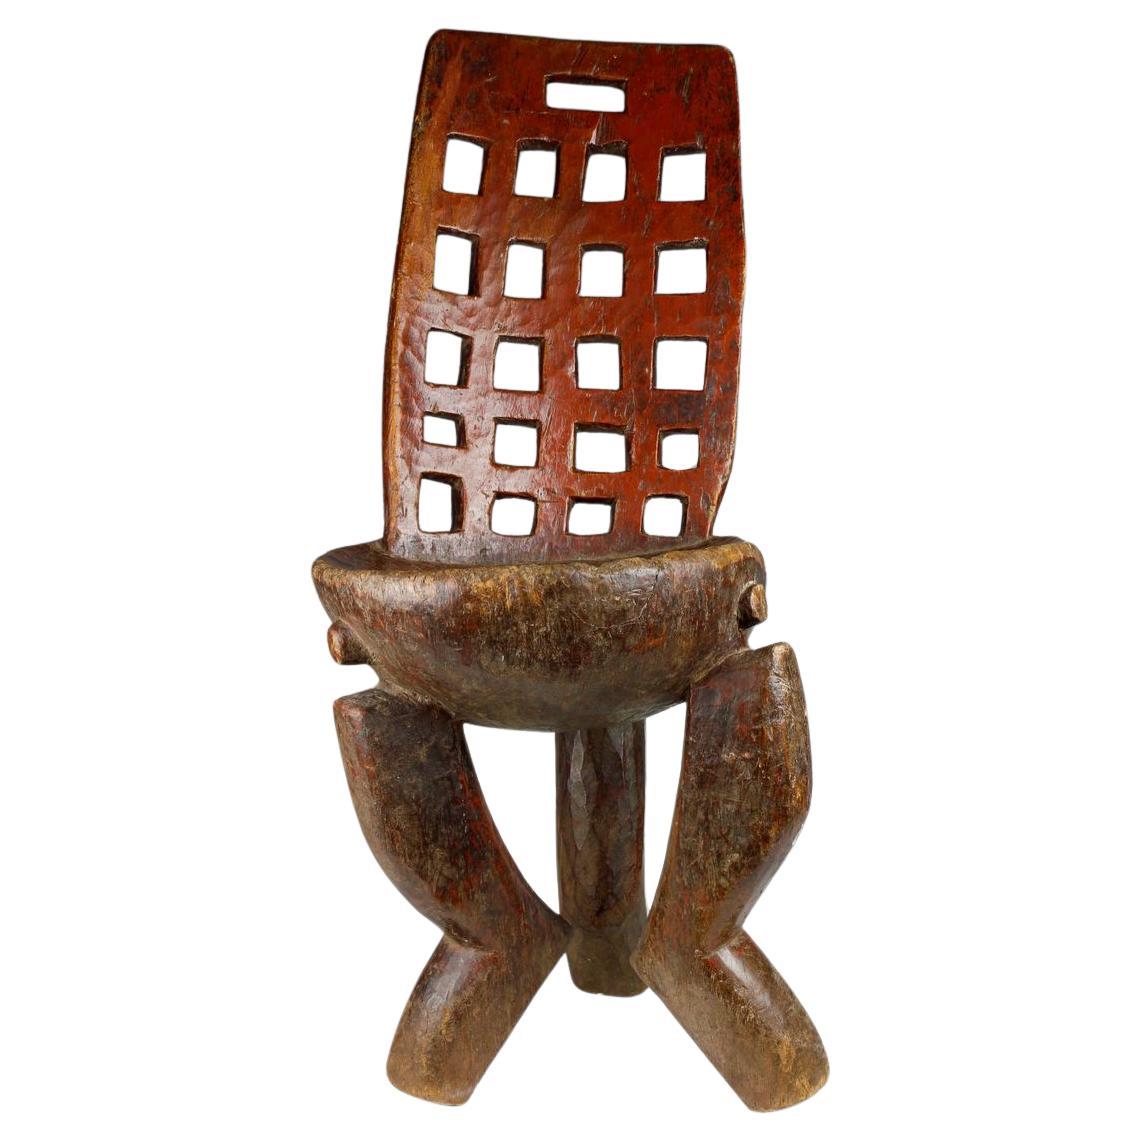 Seltener äthiopischer Stuhl mit hoher Rückenlehne aus dem 19. Jahrhundert und wundervoller "tanzender" Form